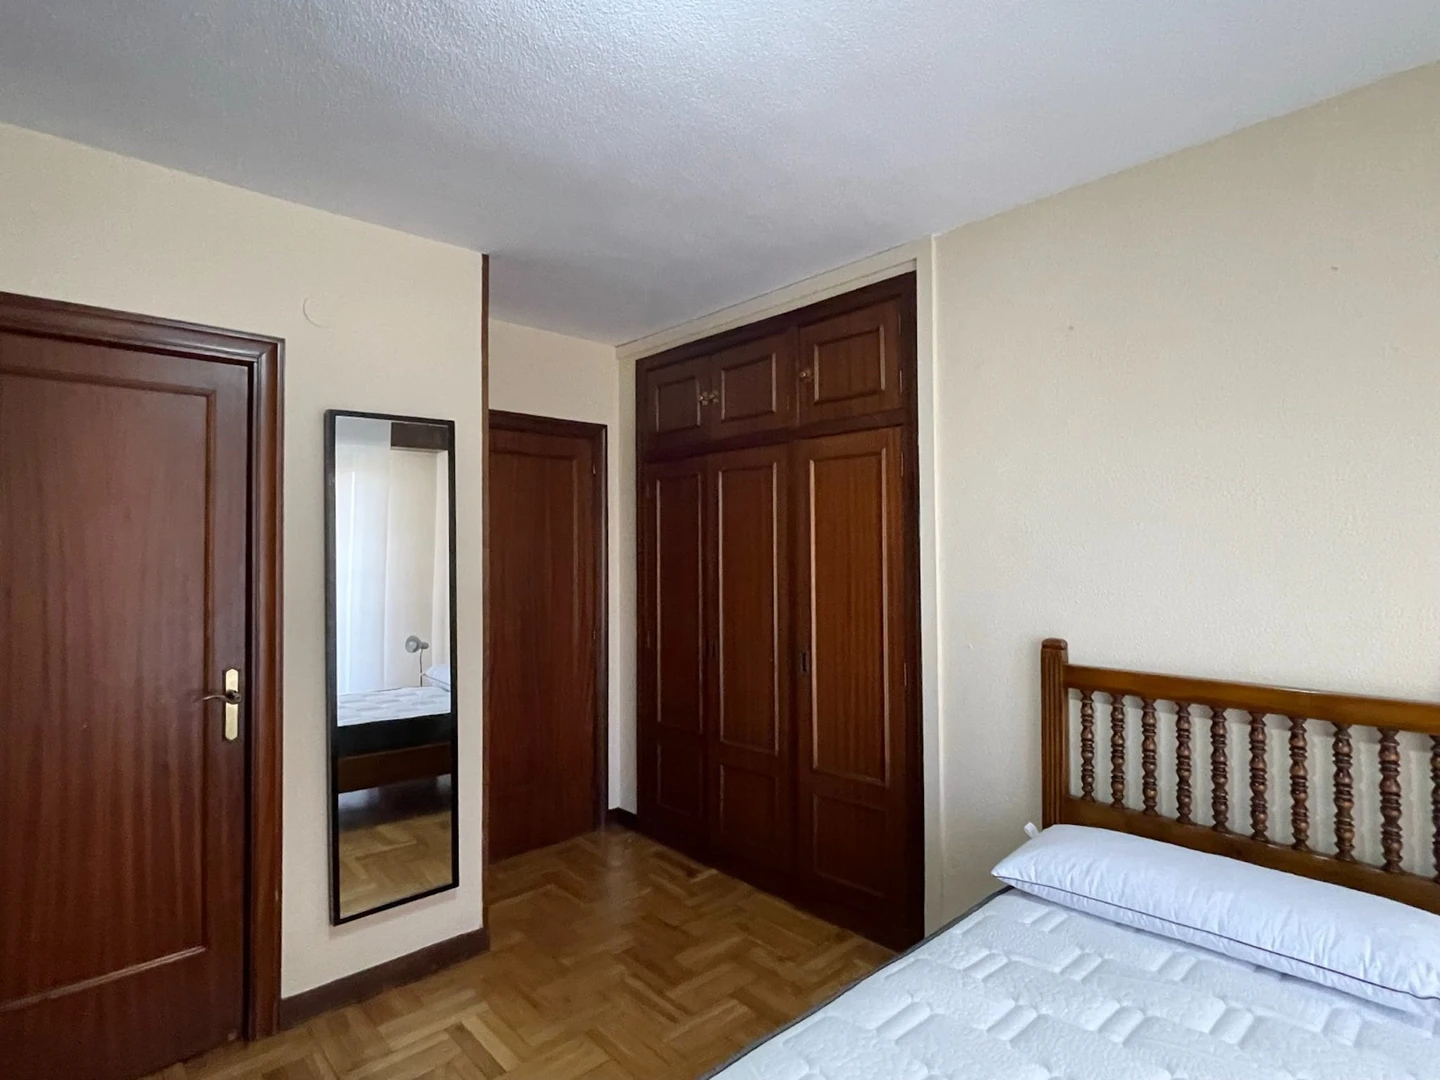 Cheap private room in pamplona-iruna